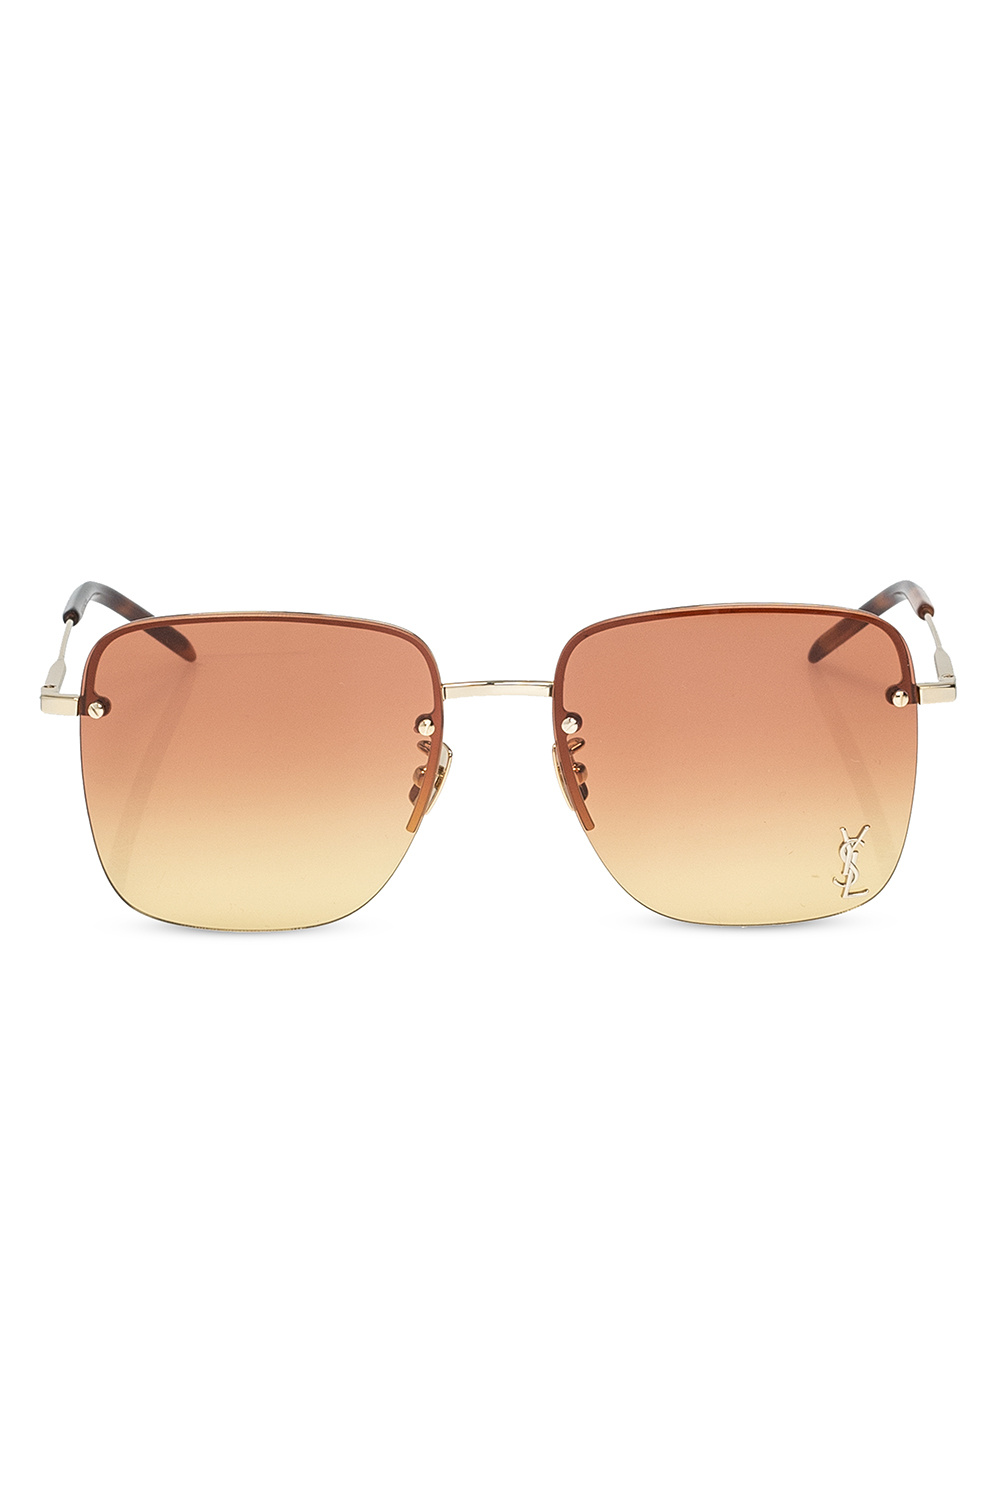 Gucci MEN GLASSES SUNGLASSES - Gold 'SL 312 M' sunglasses with